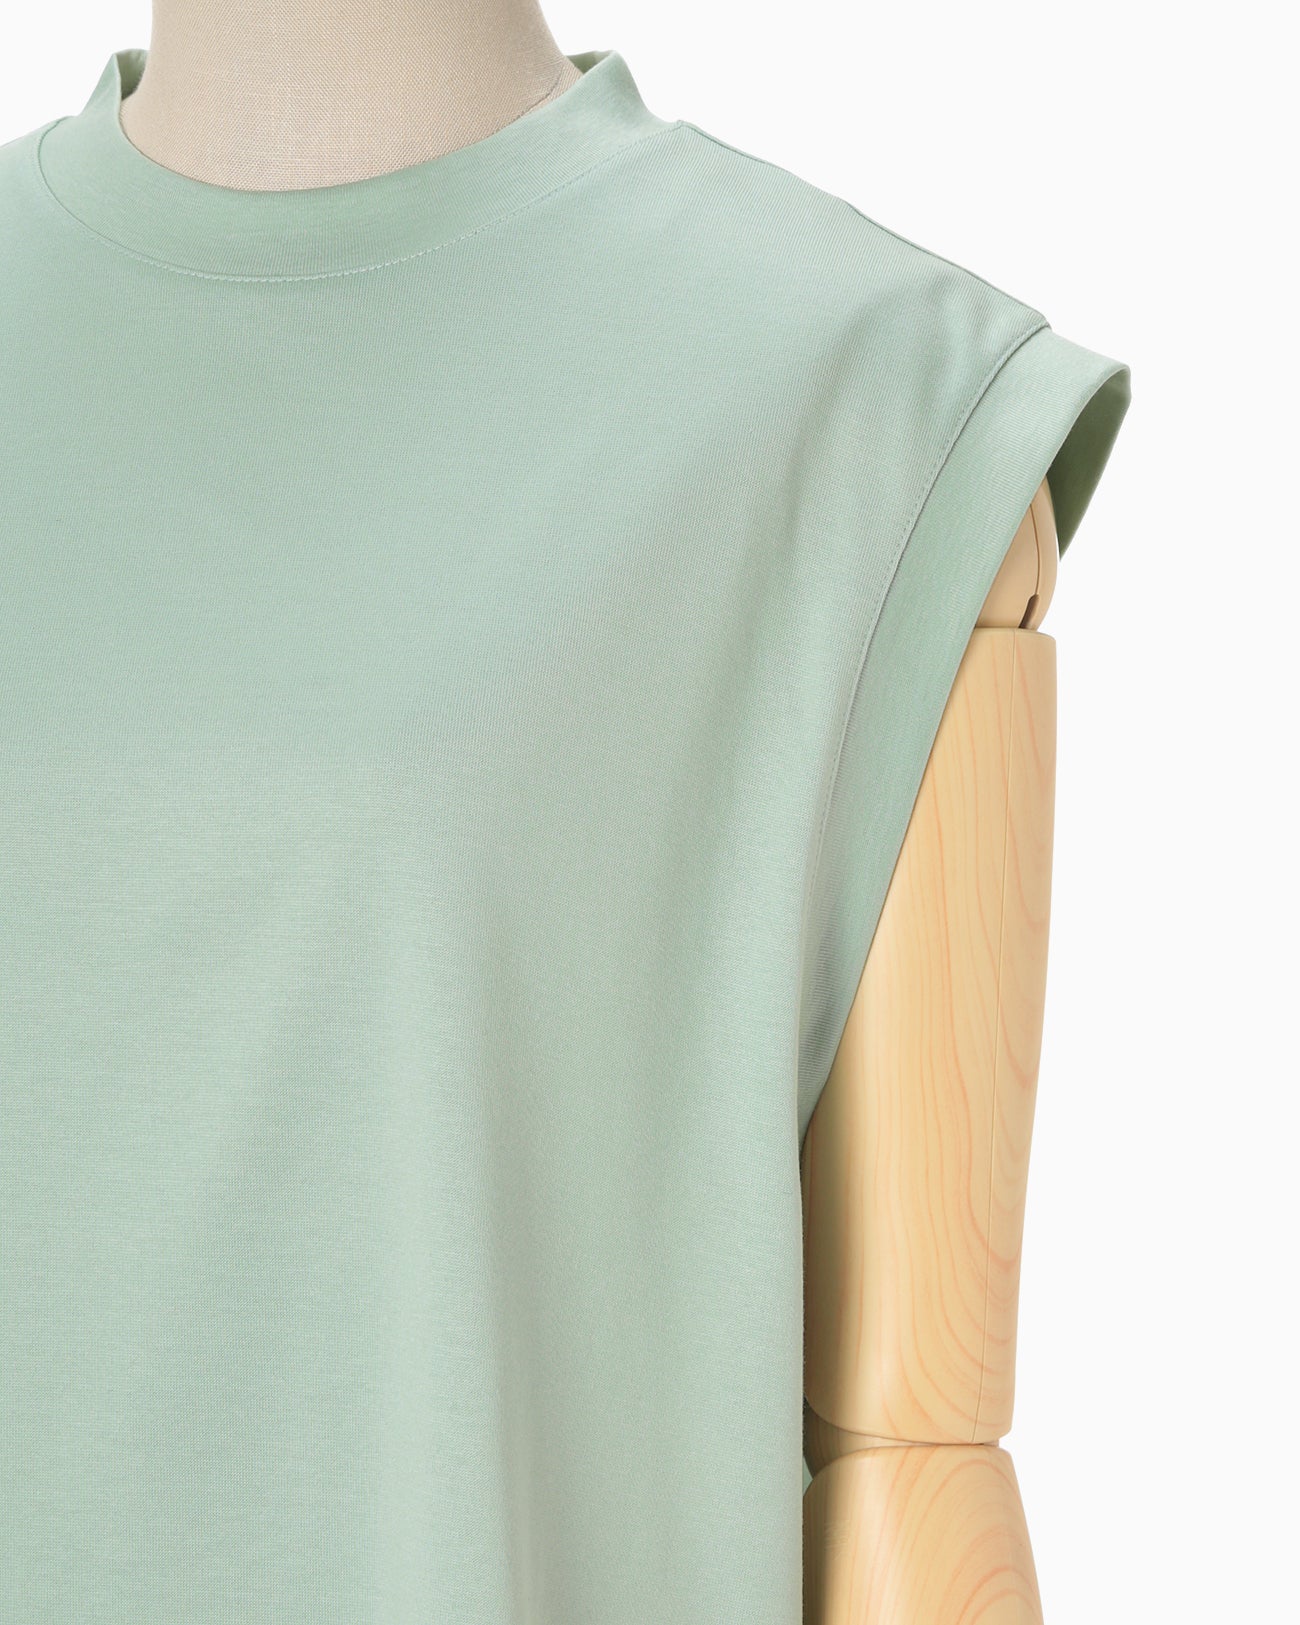 Cotton Jersey Sleeveless Top - mint green